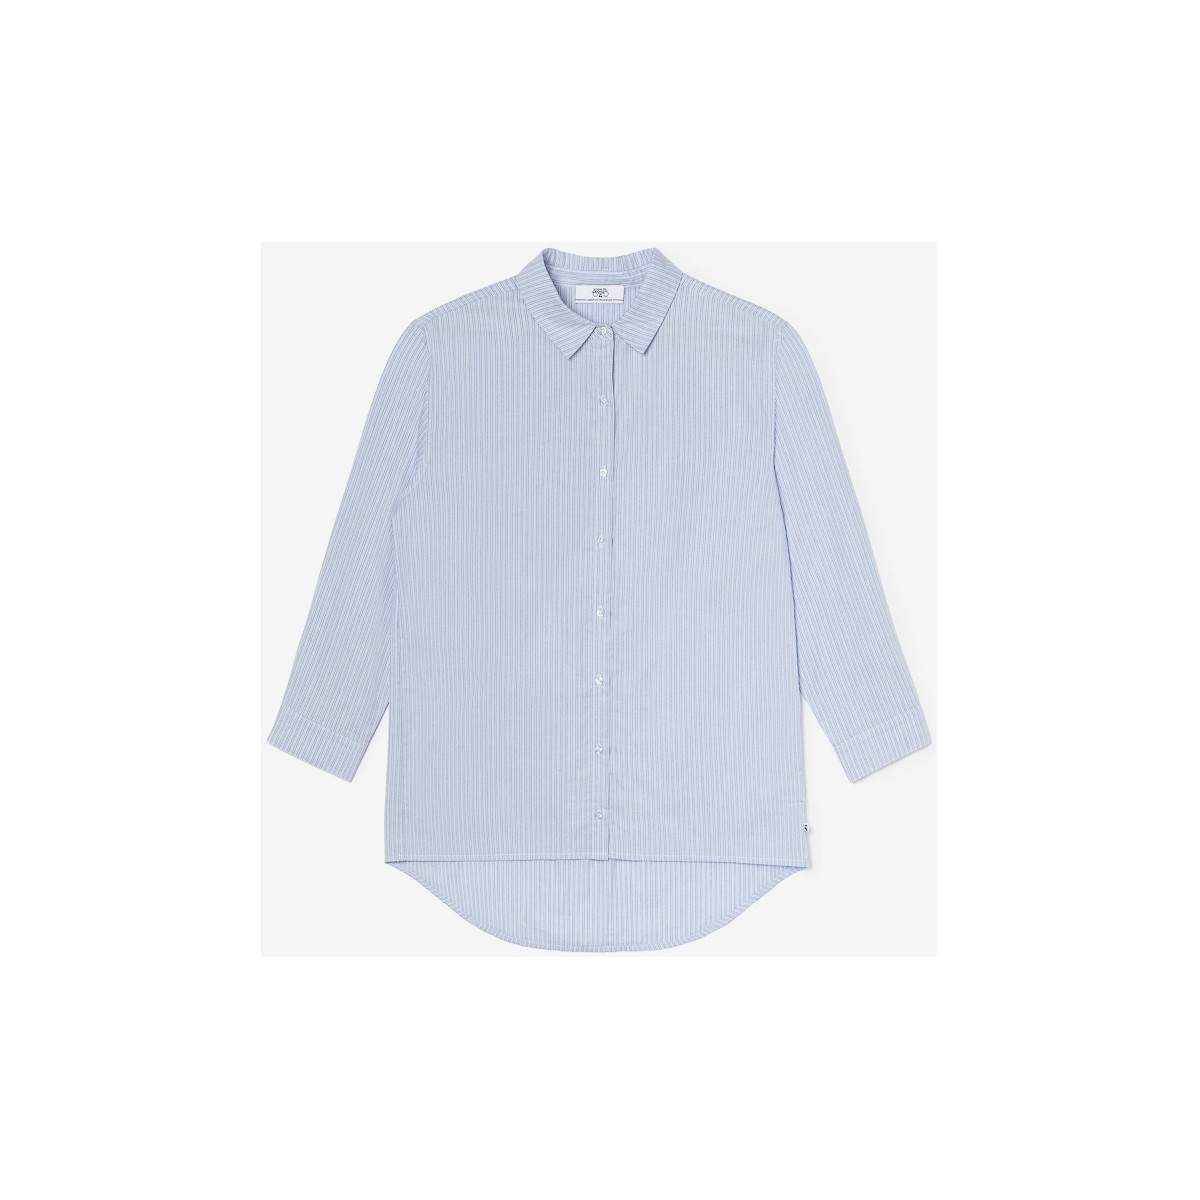 Vêtements Fille Chemises / Chemisiers sous 30 joursises Chemise oversize basegi à rayures bleu ciel Bleu